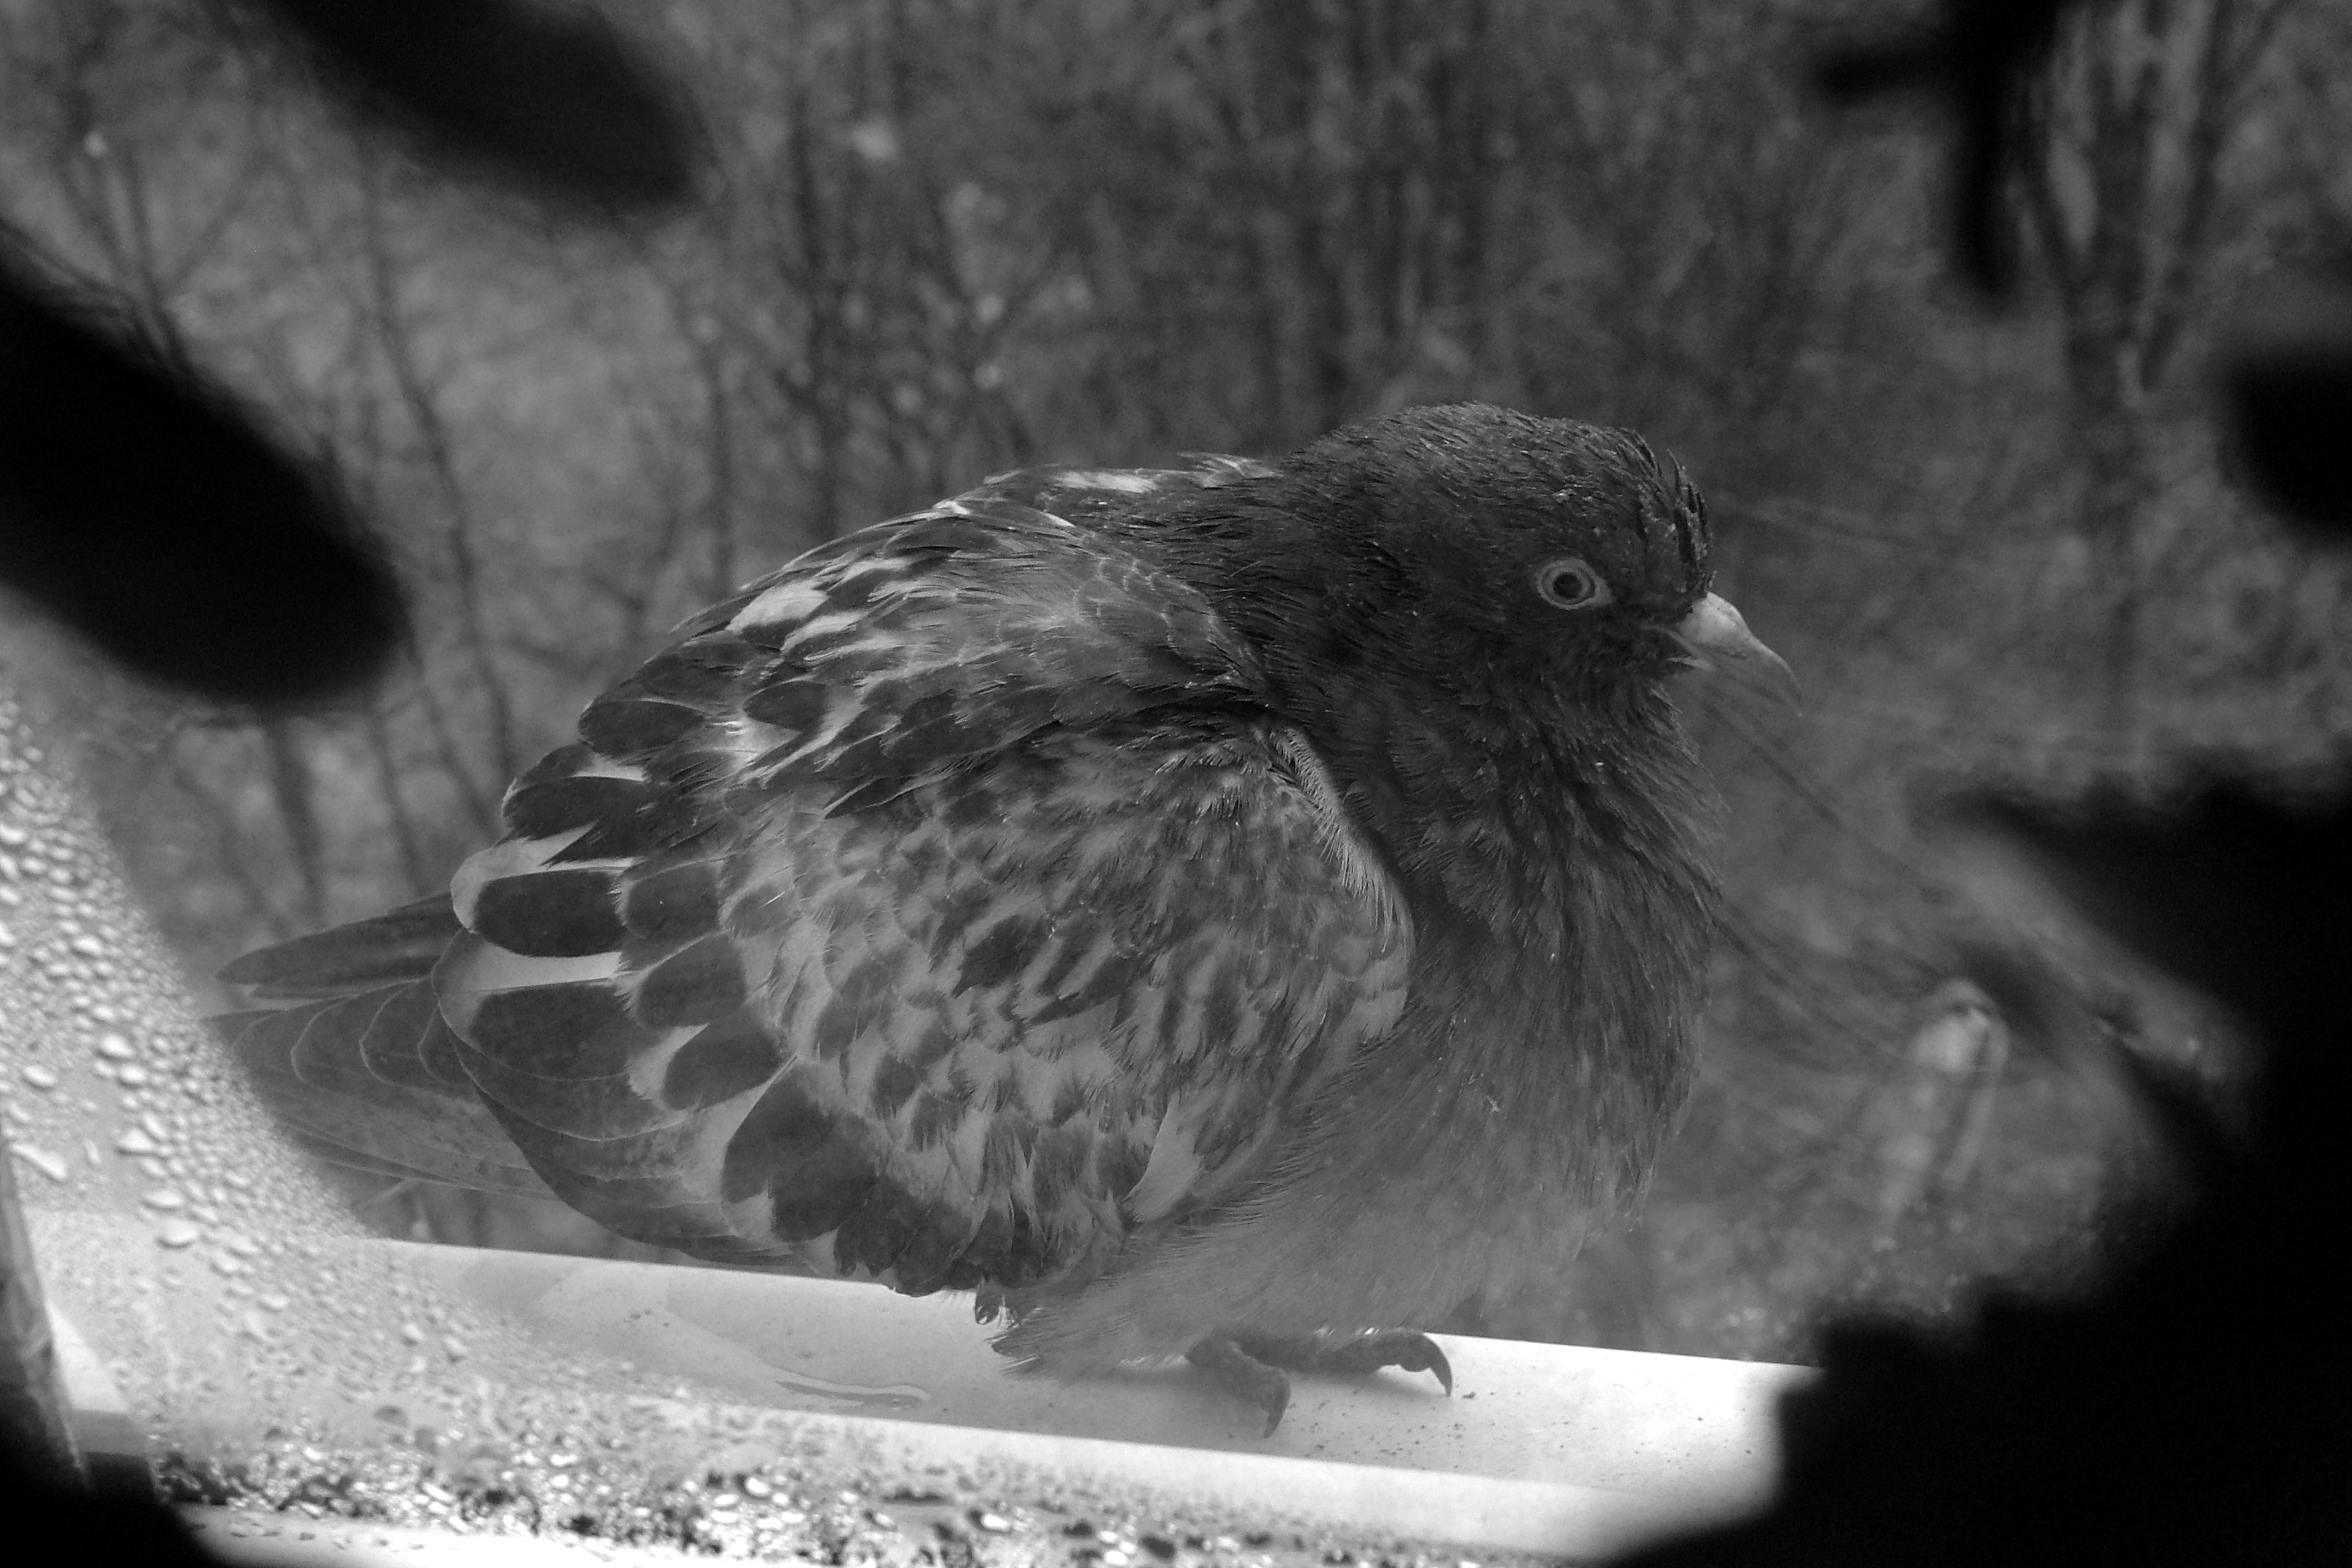 одинокий голубь на карнизе за окном,смотрит на меня стучится в дом .